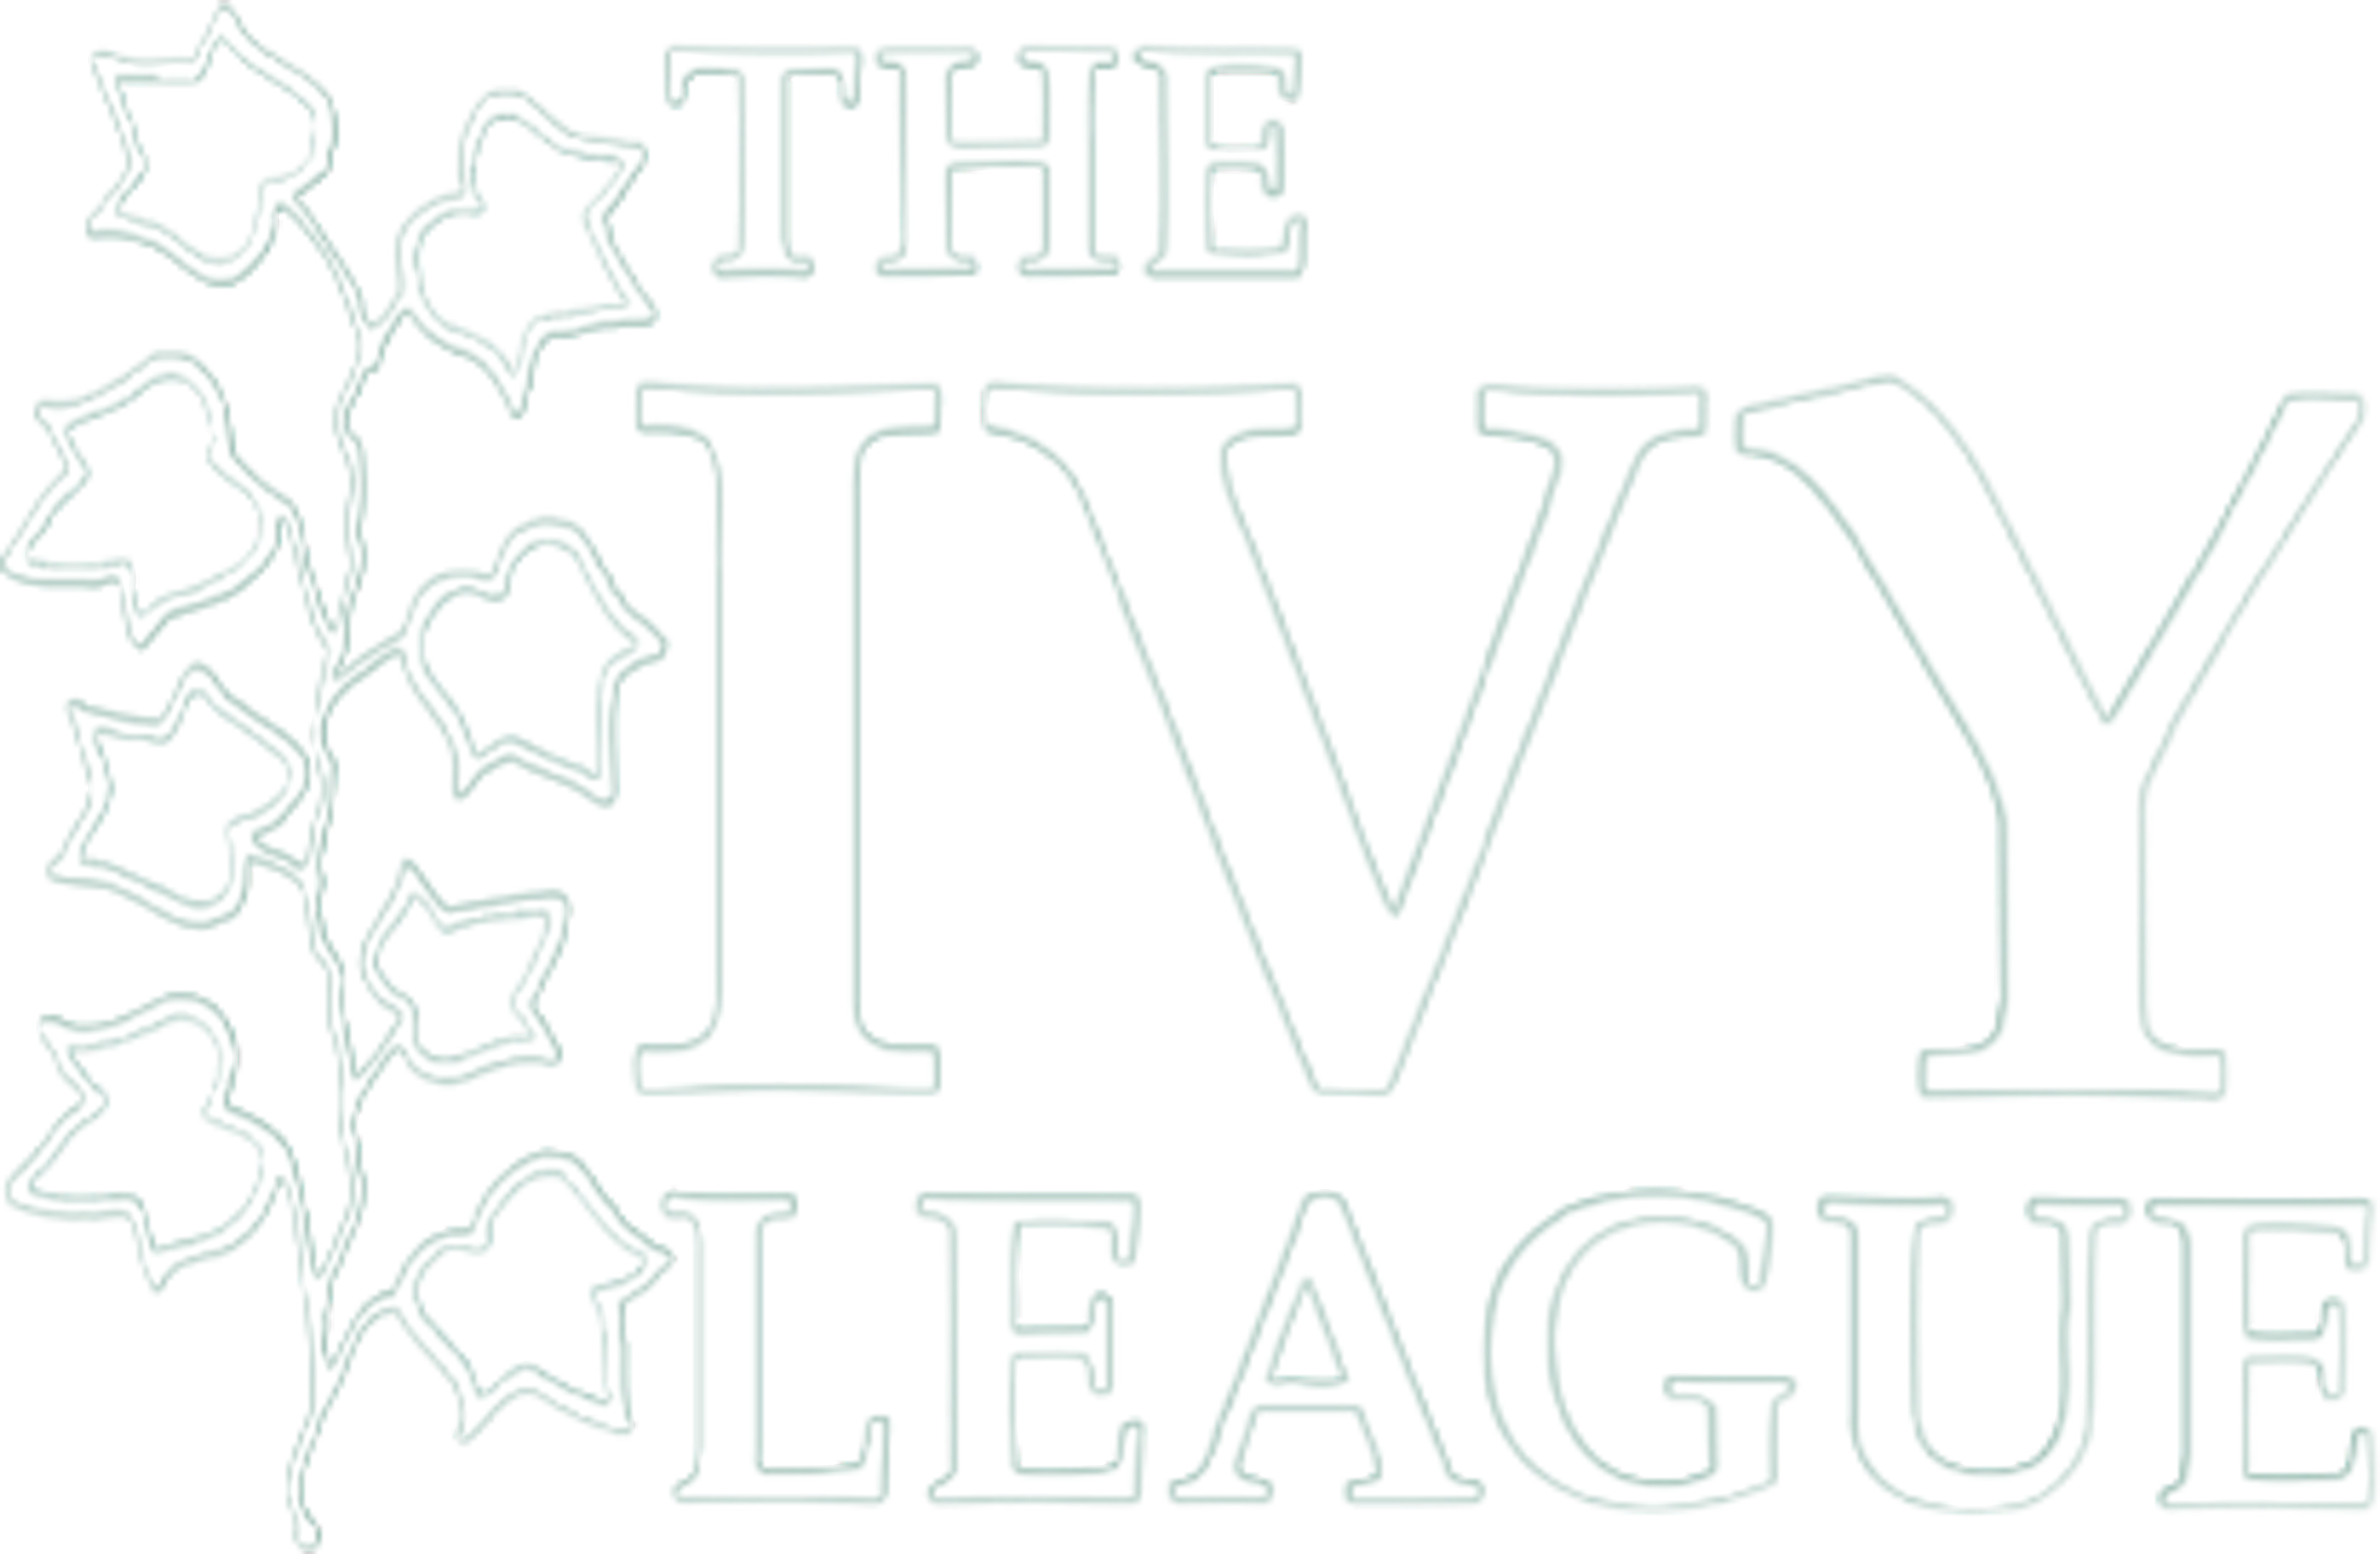 IVY league